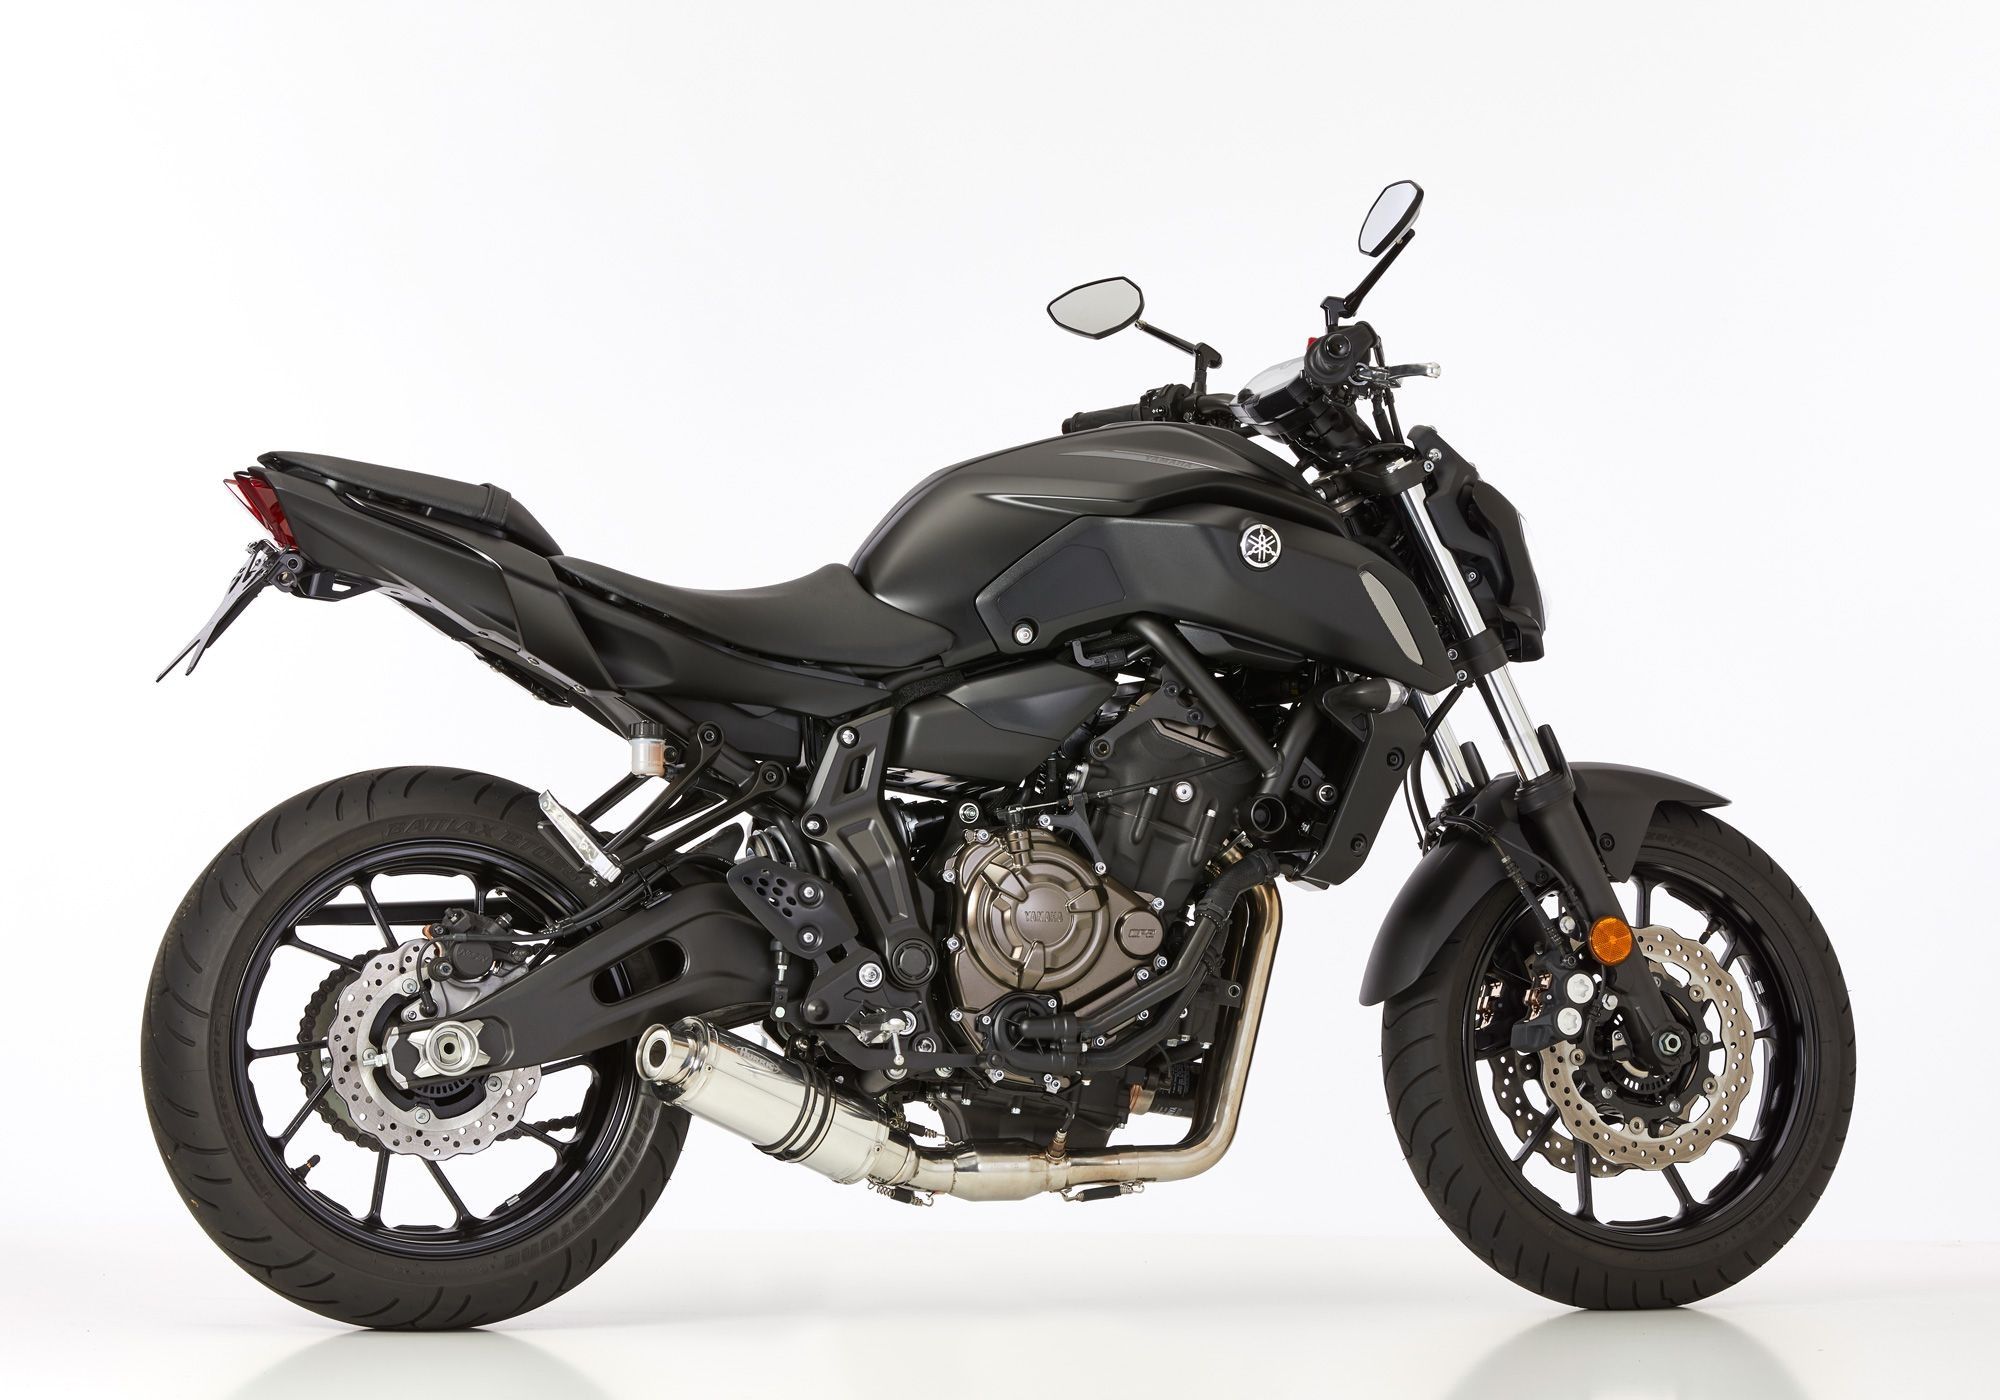 HURRIC Supersport Auspuffanlage Short silber EG-BE passt für Yamaha MT-07 Motocage, Tracer 700, XSR700